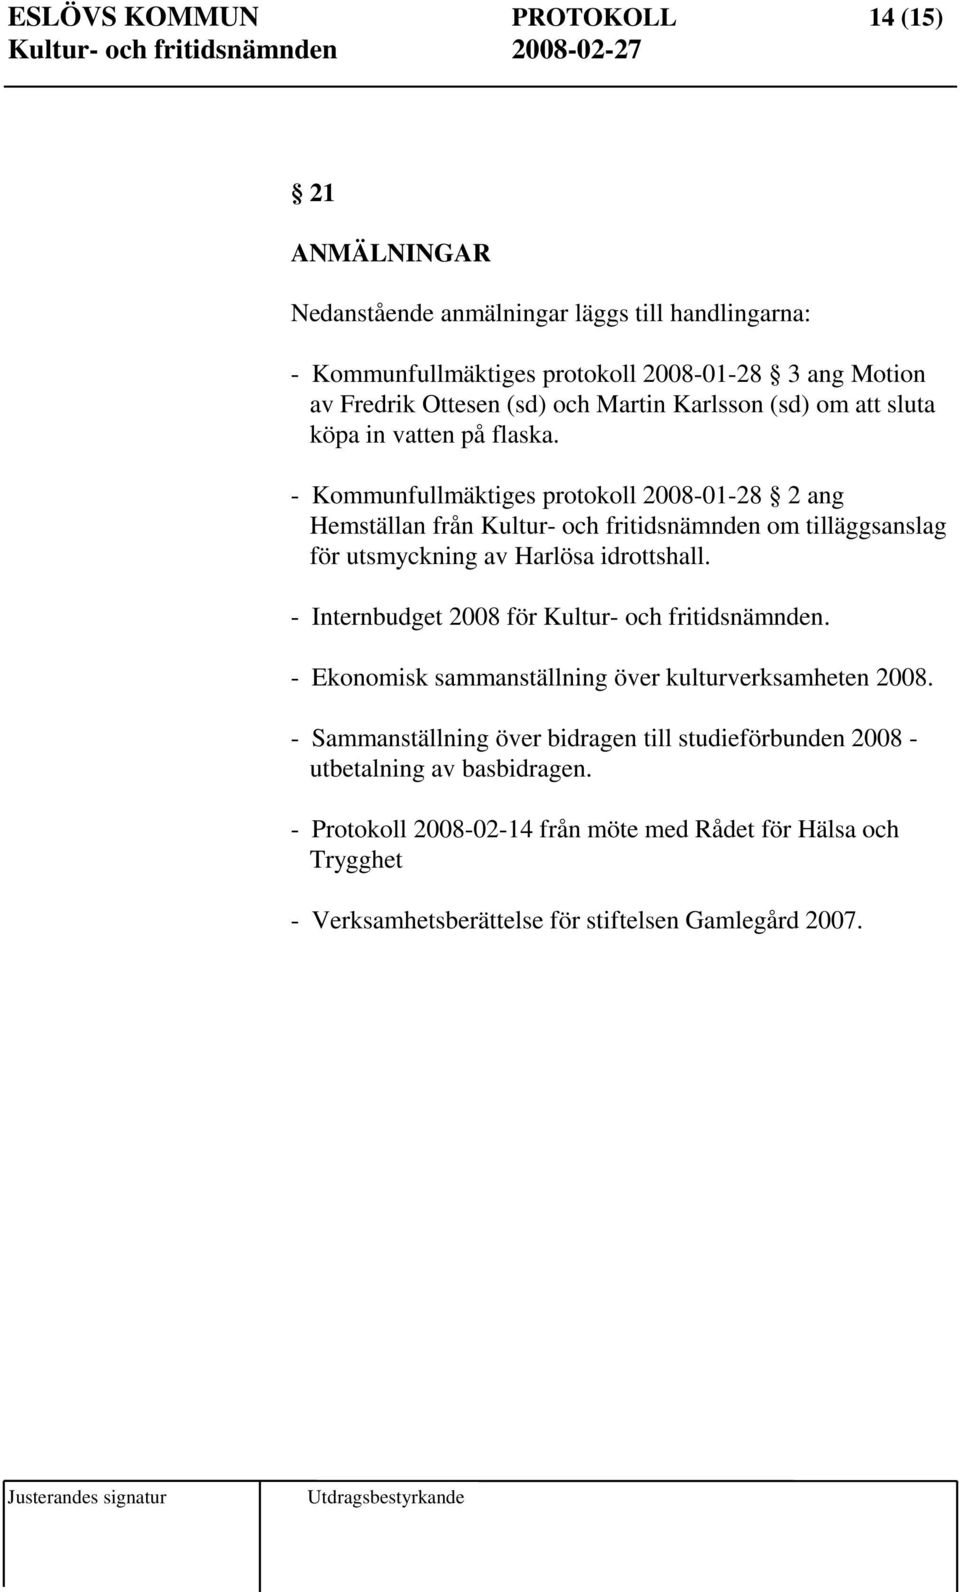 - Kommunfullmäktiges protokoll 2008-01-28 2 ang Hemställan från Kultur- och fritidsnämnden om tilläggsanslag för utsmyckning av Harlösa idrottshall.